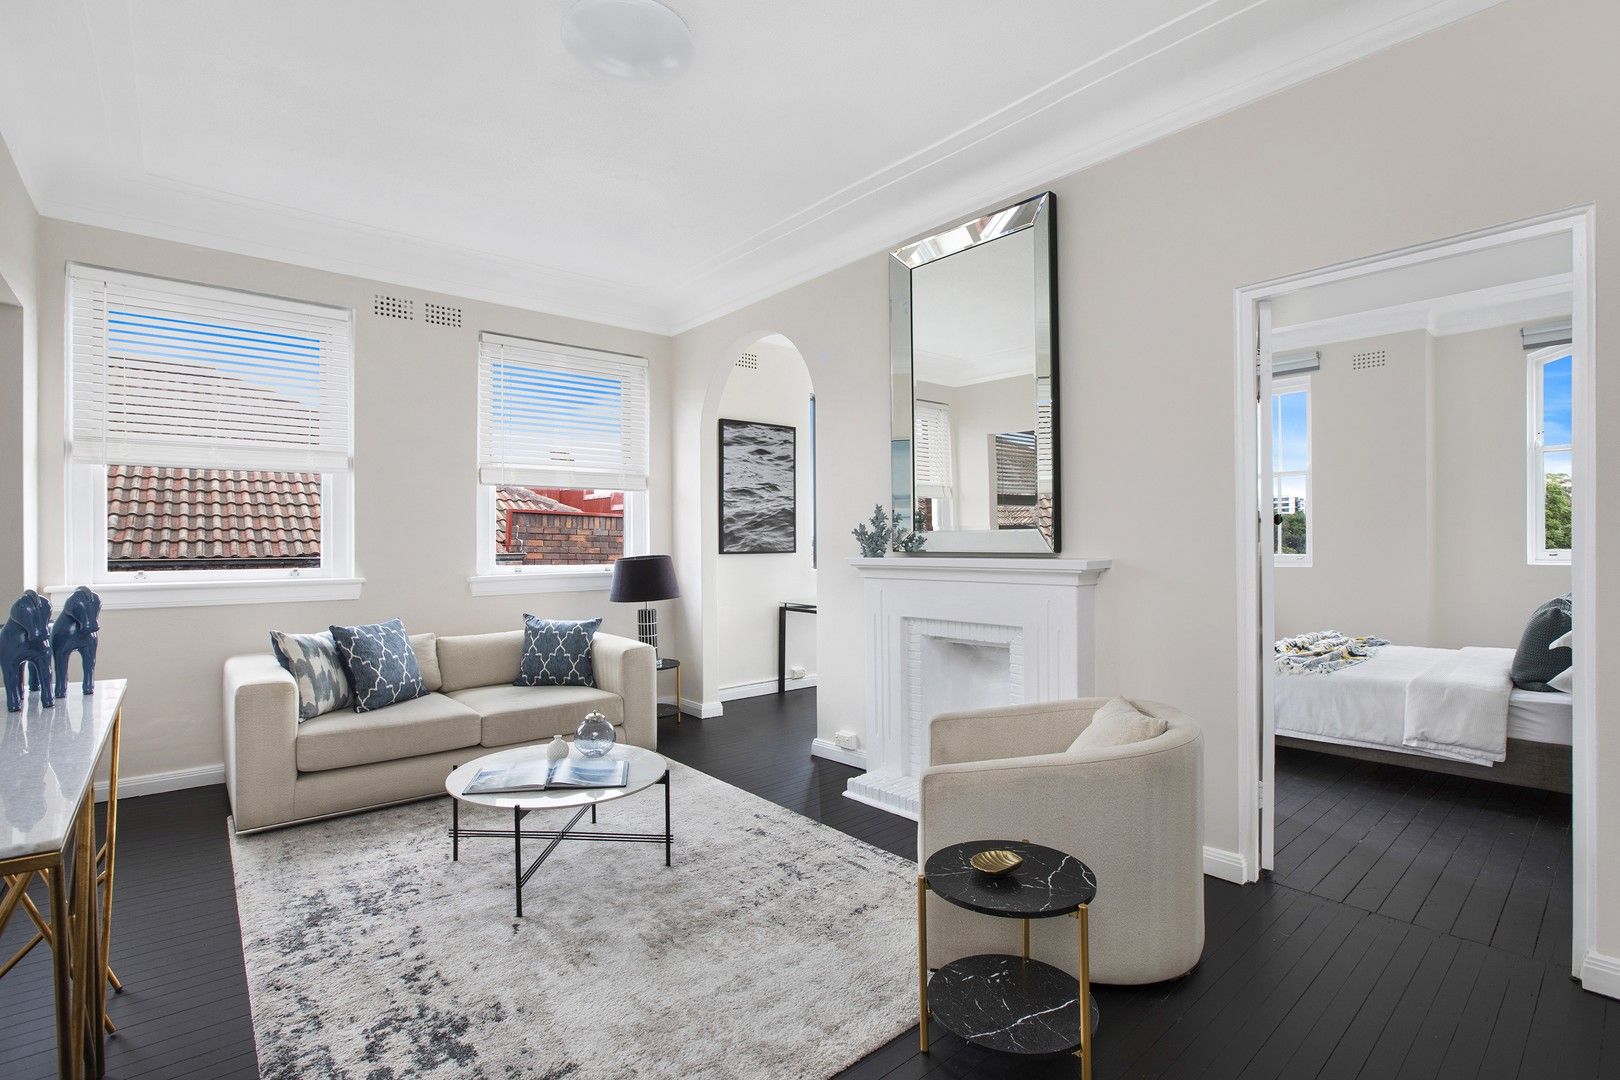 2 bedrooms Apartment / Unit / Flat in 10/40A Birriga Road BELLEVUE HILL NSW, 2023